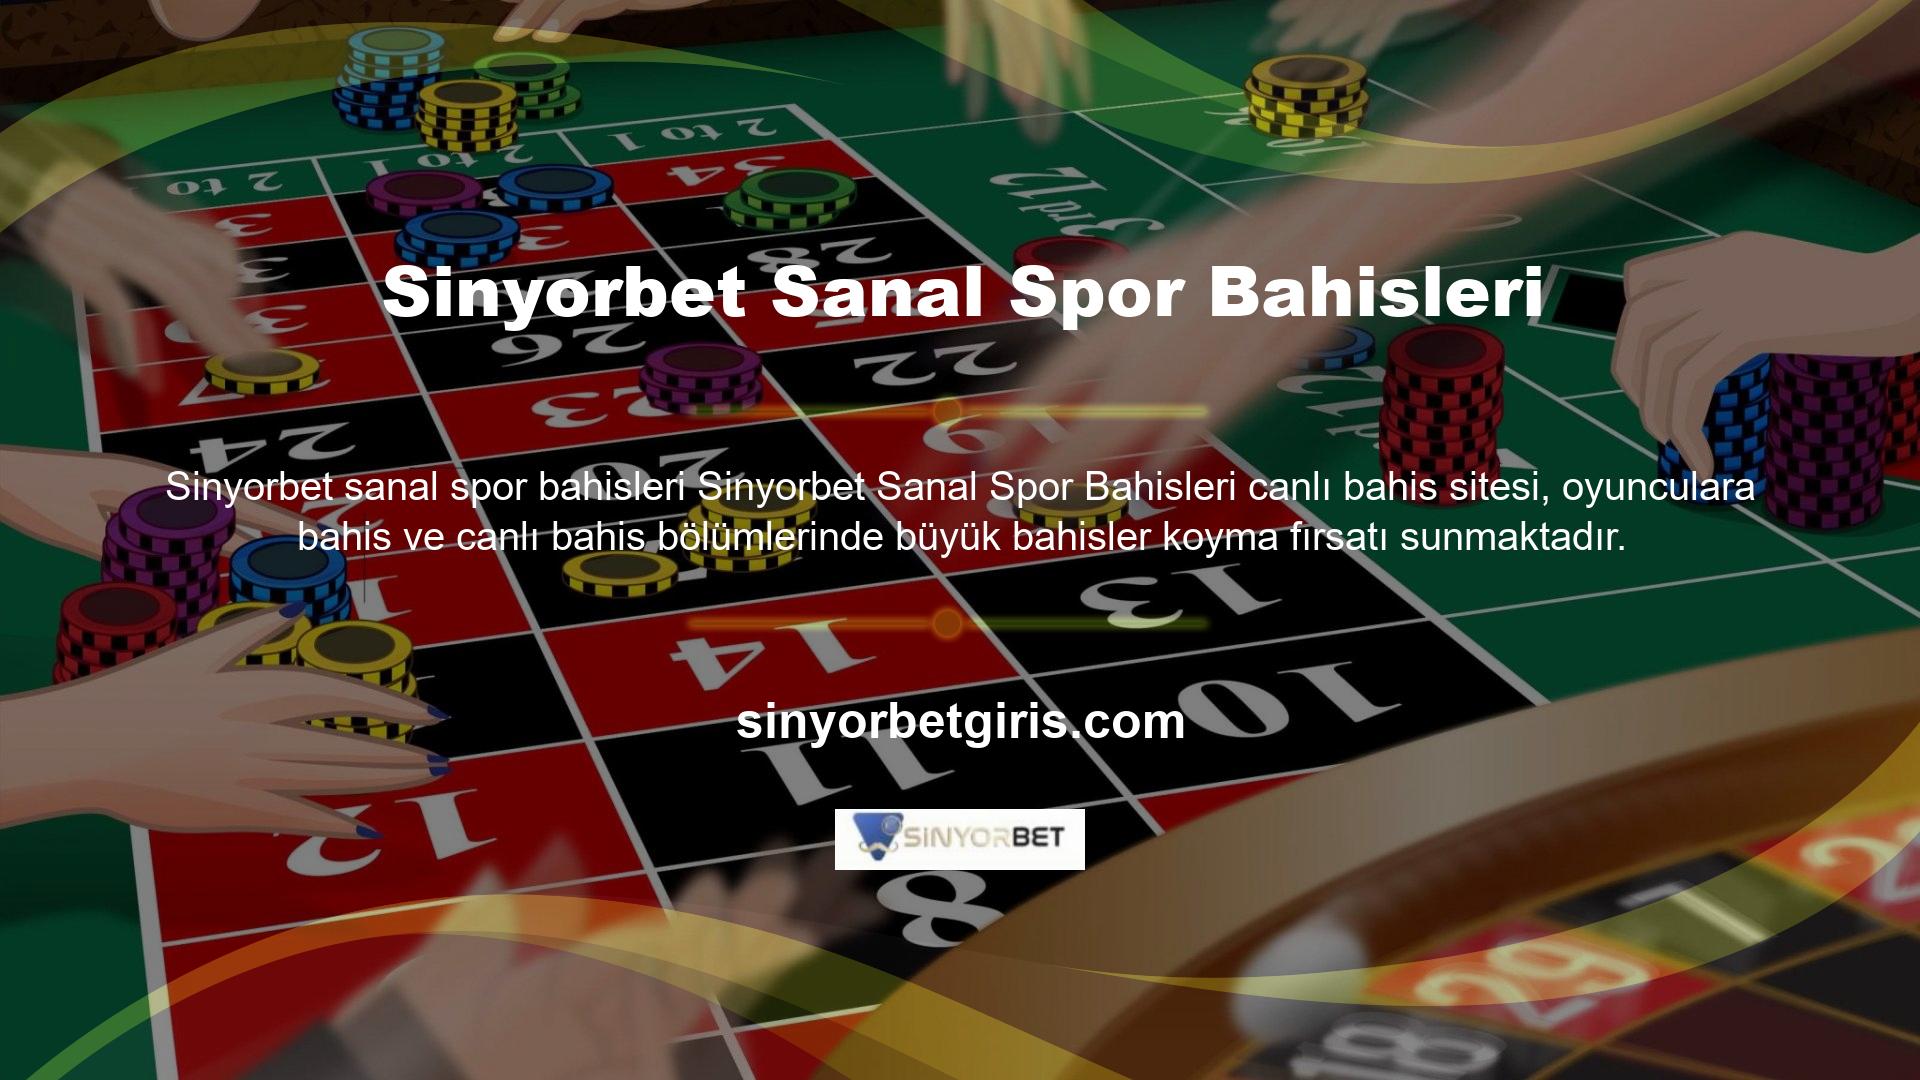 Ayrıca Sinyorbet Canlı Casino web sitesi, son yıllarda tanınan en iyi sanal bahisleri içeren bir sanal bahis kategorisine erişmenizi sağlar